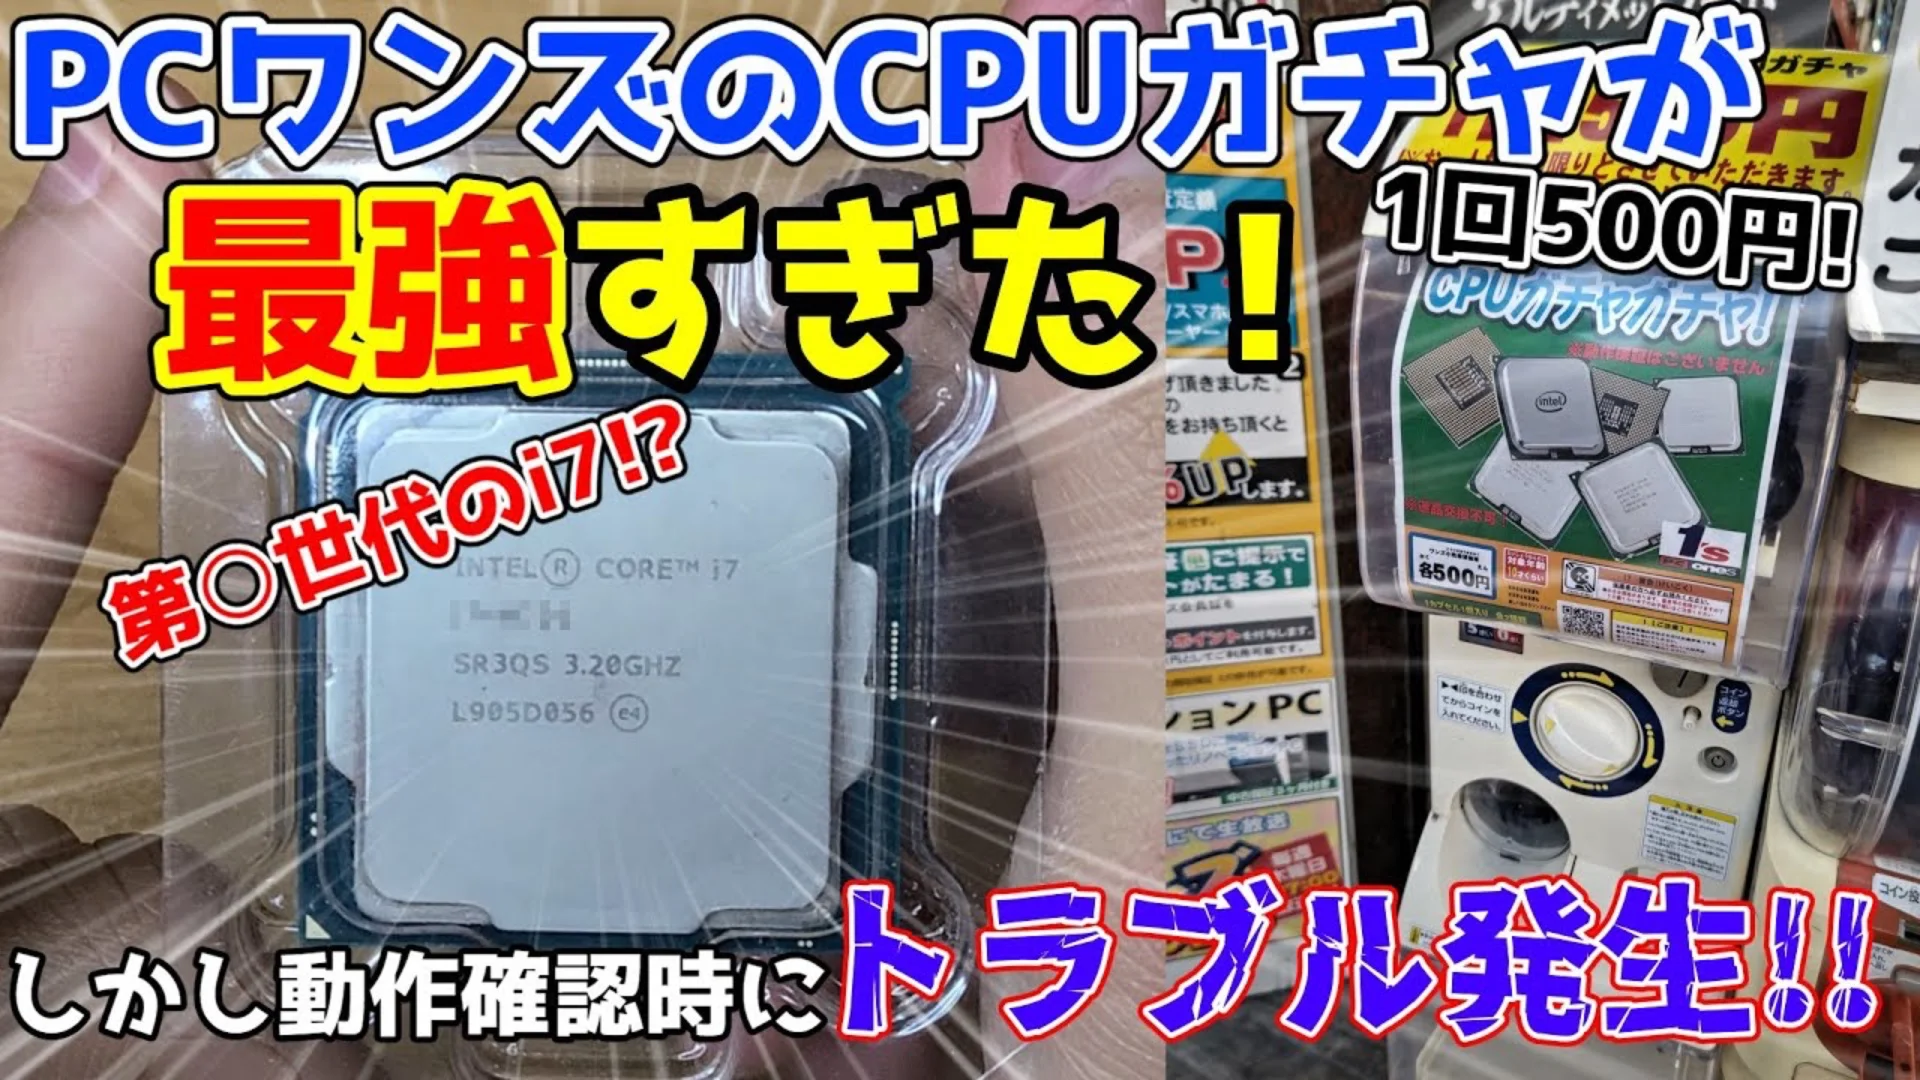 Un distributeur de CPU au Japon – Un Core i7-8700 pour 3 dollars !